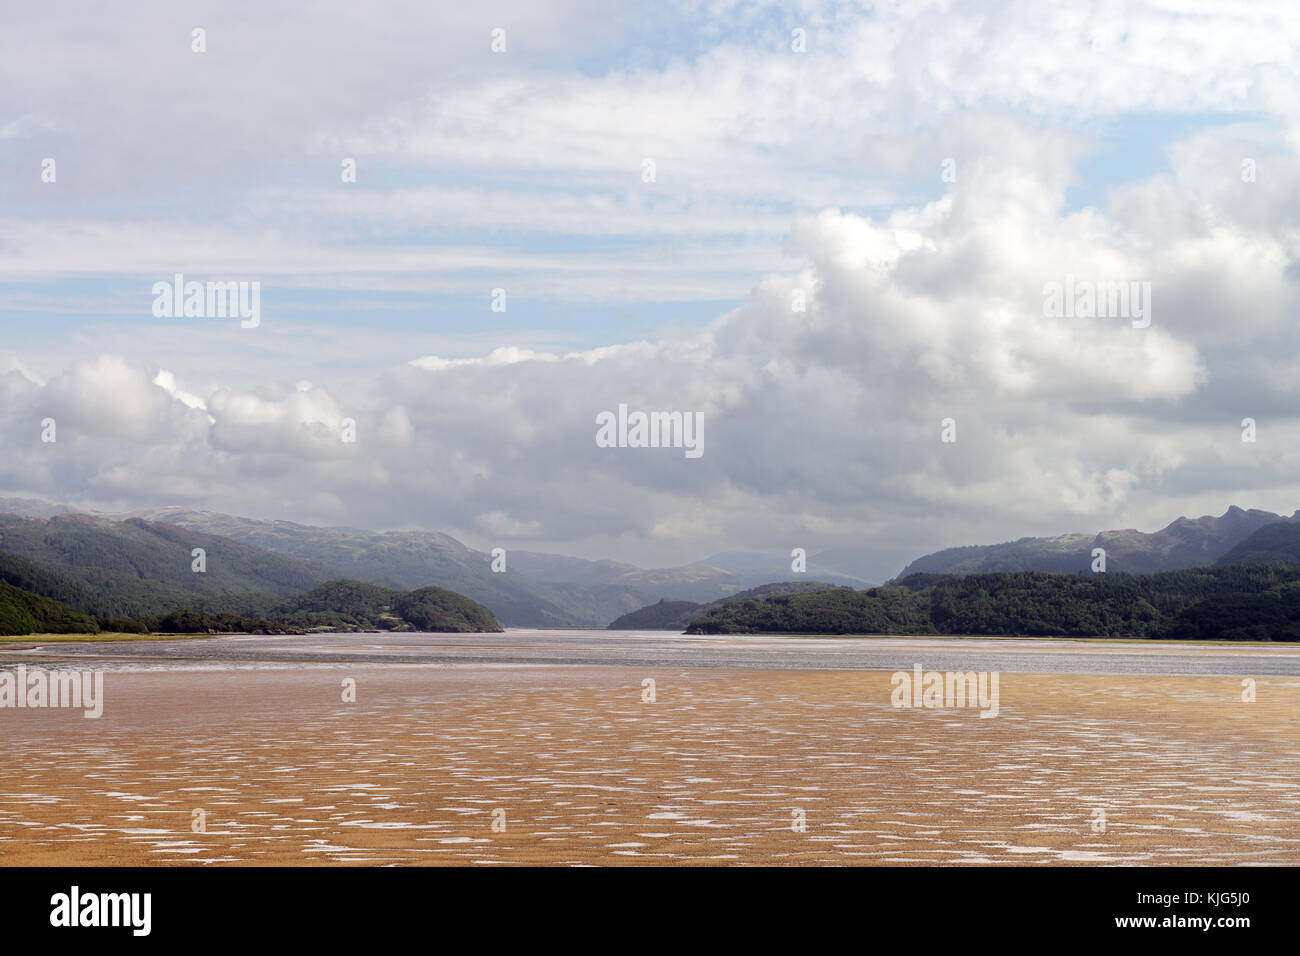 Il mawddach estuary in Galles, descritto come uno dei più belli degli estuari in Europa, supporta ampie zone di sabbia appartamenti e la palude salata. Foto Stock